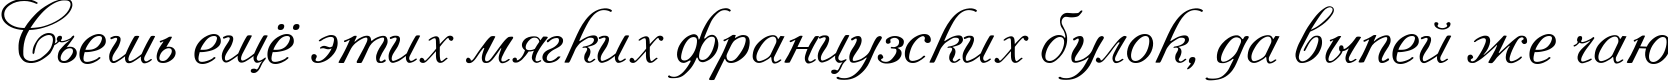 Пример написания шрифтом Pompadur текста на русском